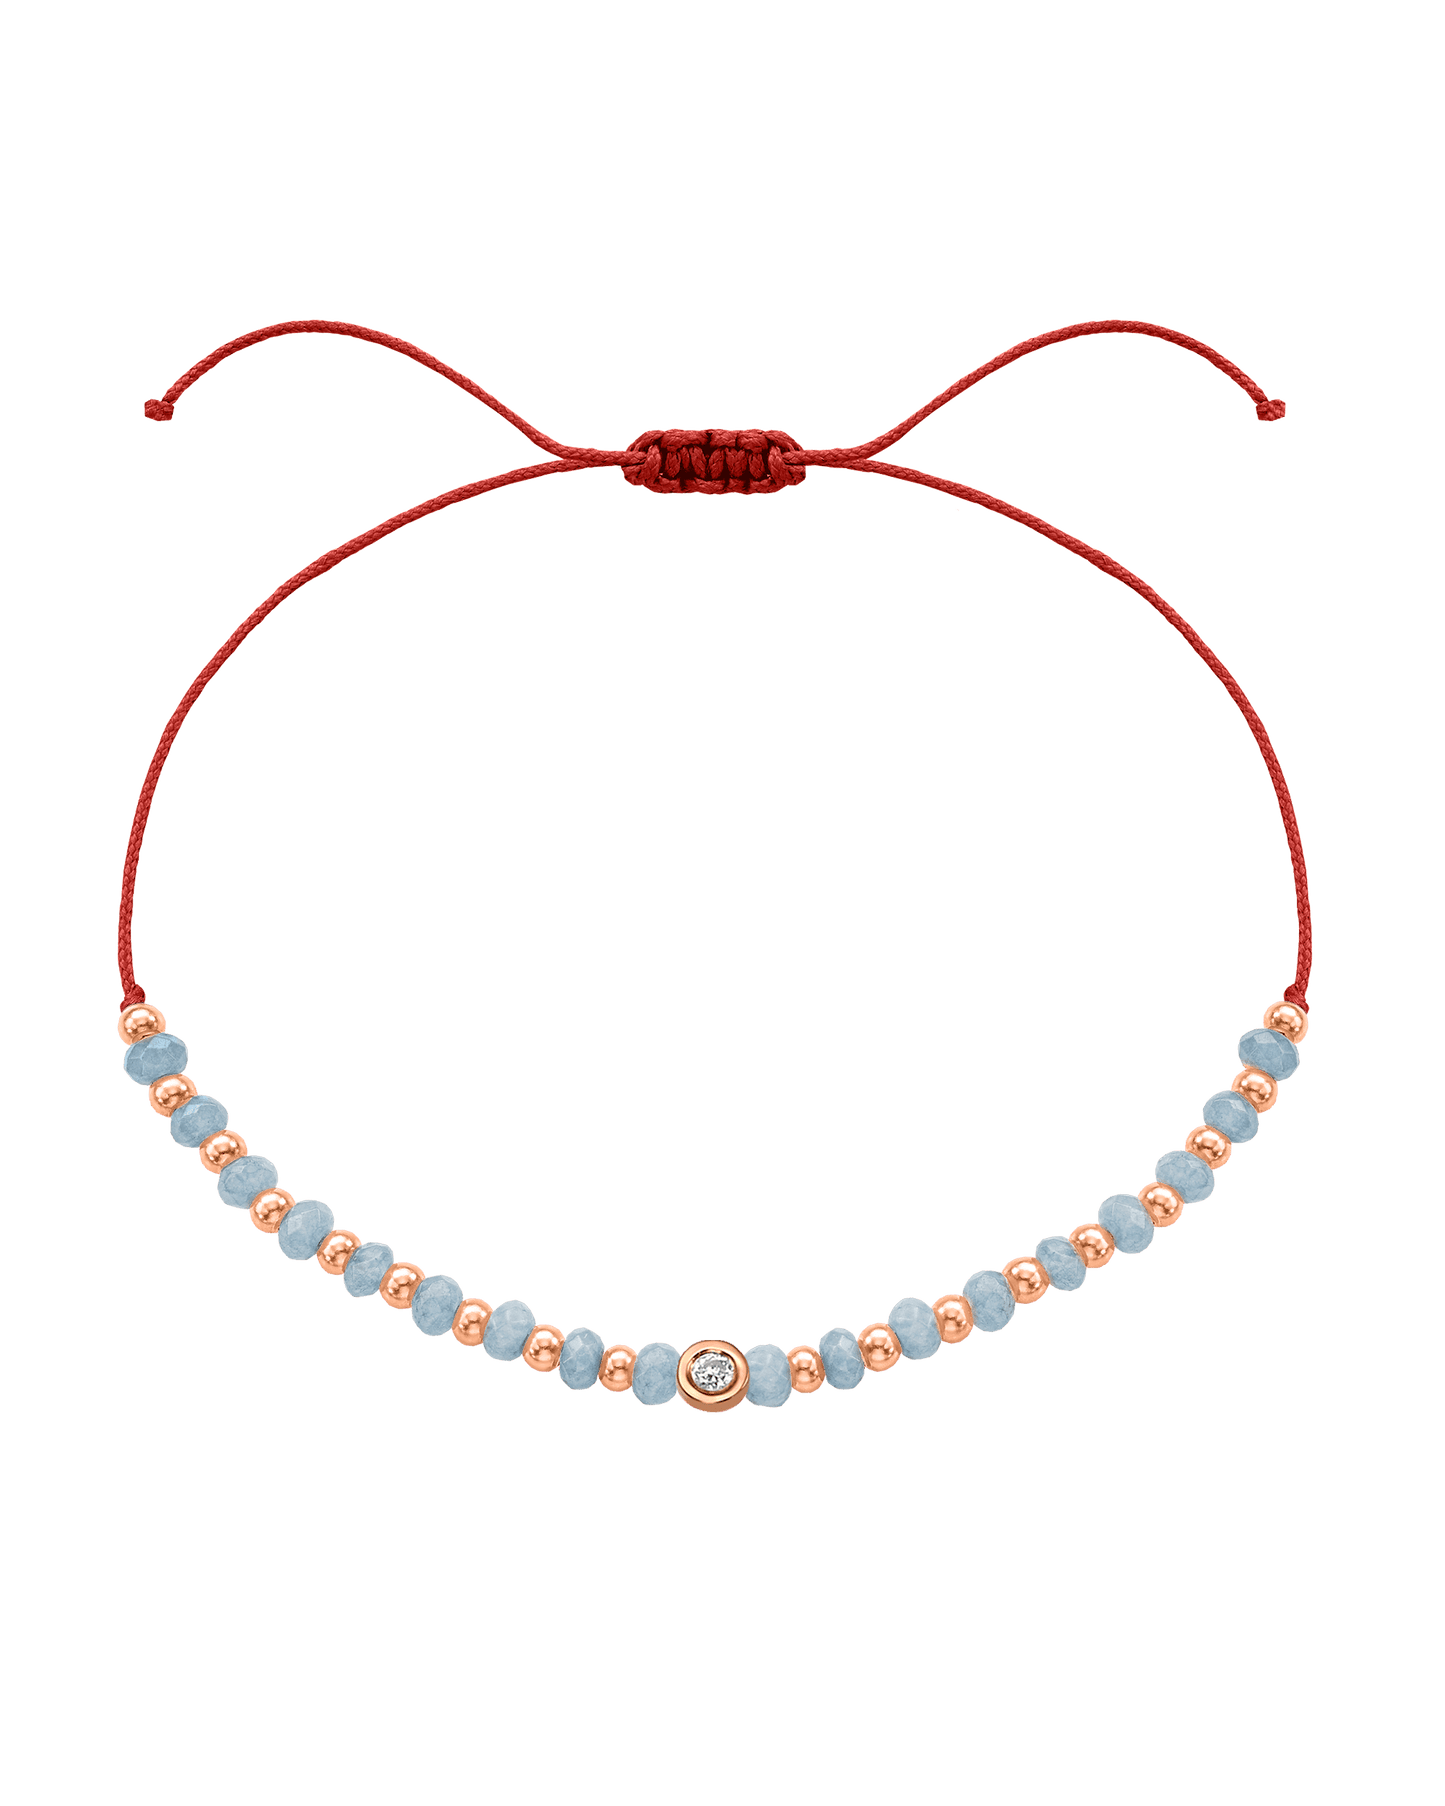 Celestite Gemstone String of Love Bracelet for Mindfulness - 14K Rose Gold Bracelets 14K Solid Gold Red Small: 0.03ct 